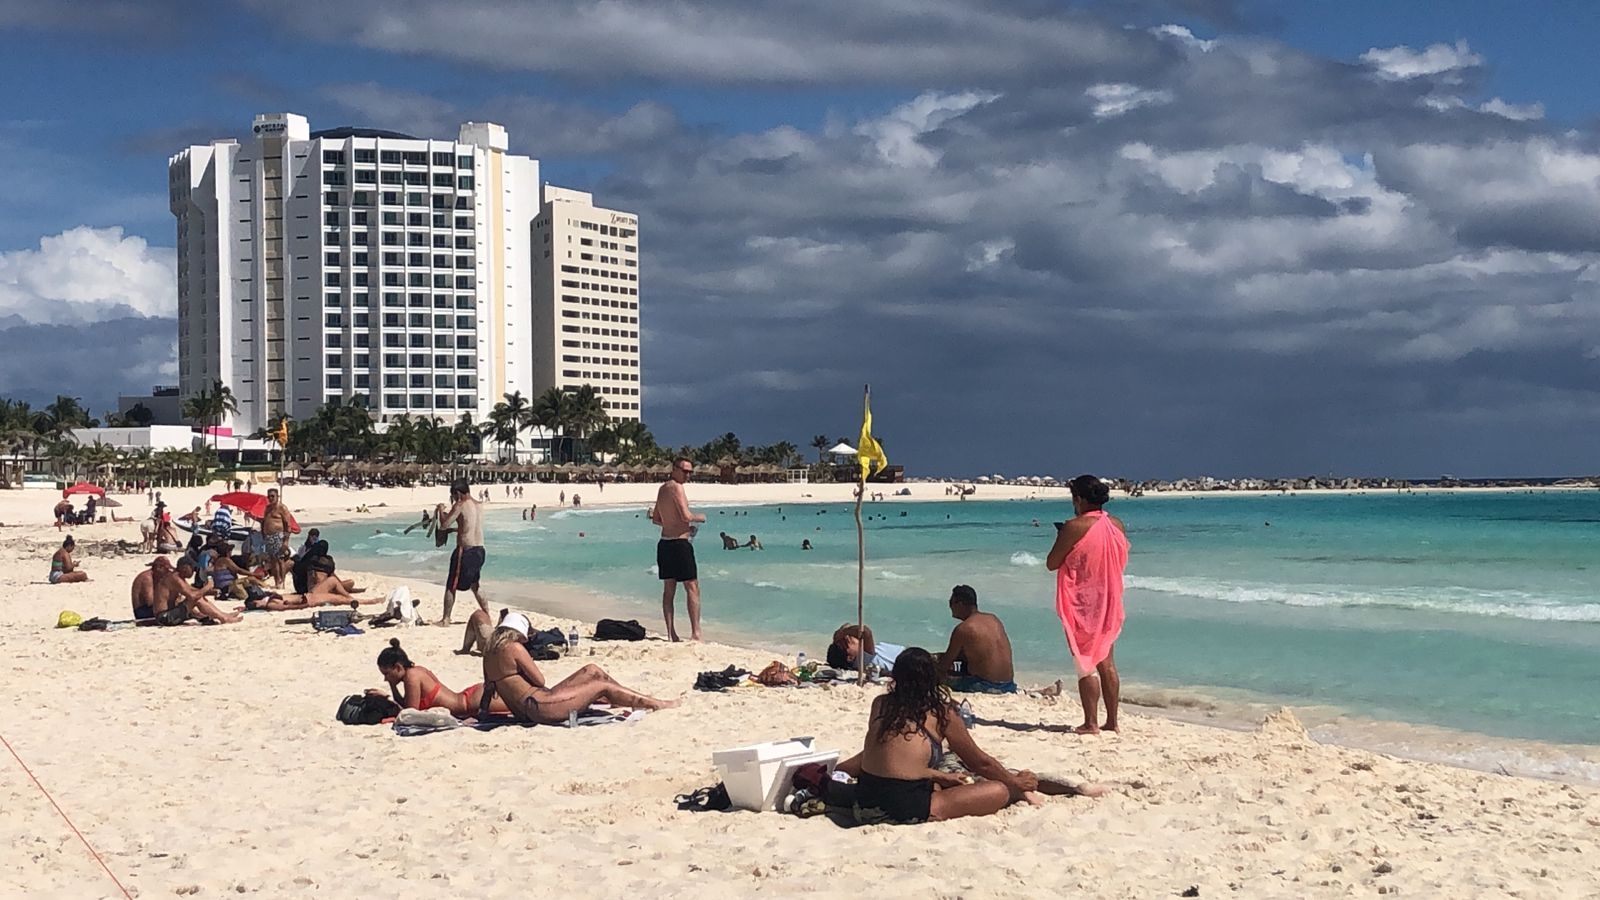 Se espera una temperatura máxima de 28 °C en Cancún